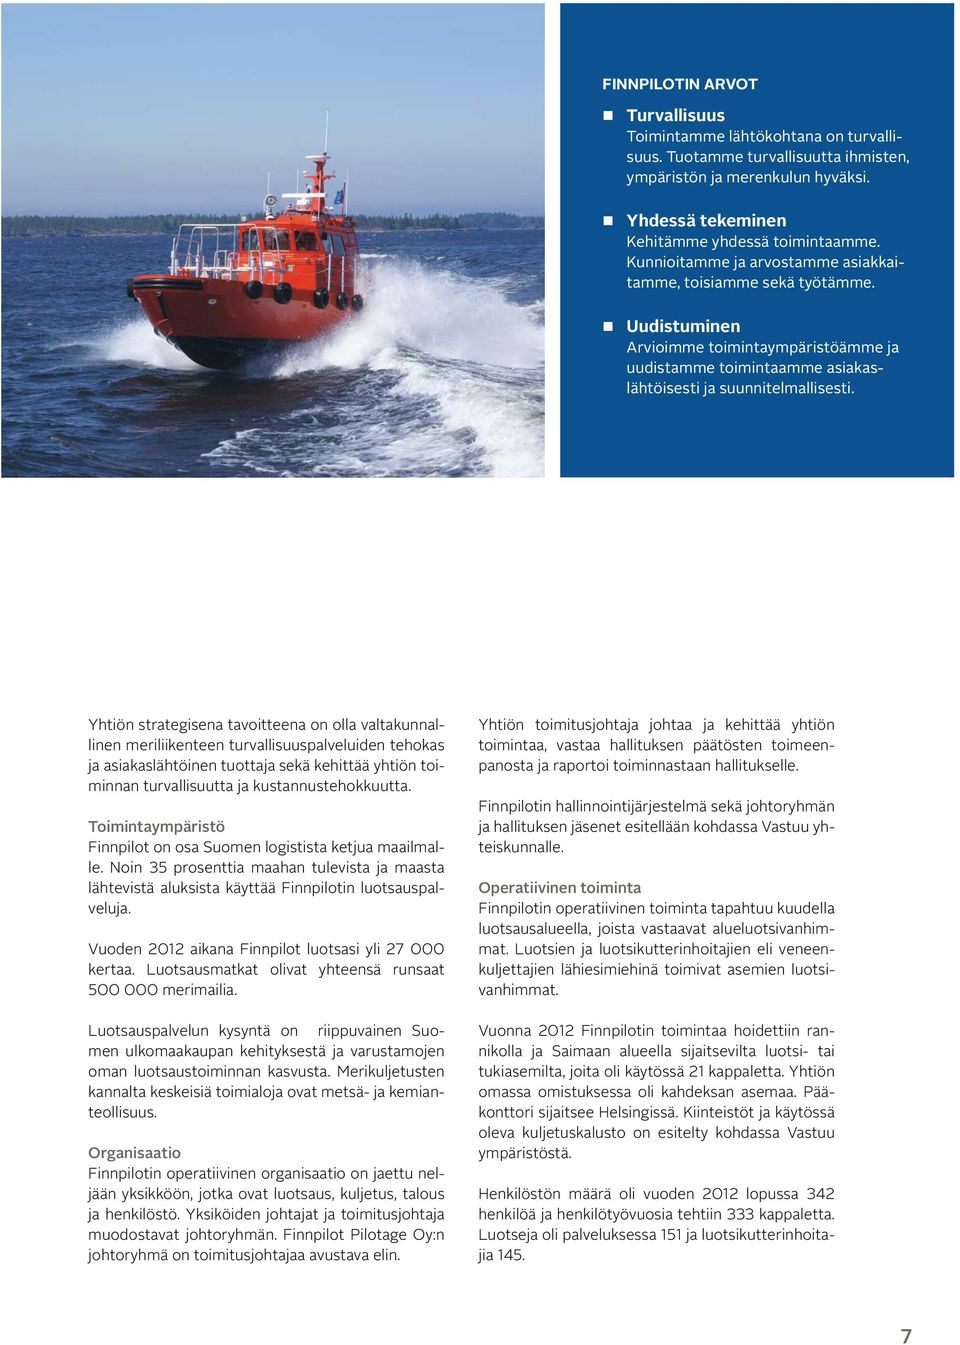 Yhtiön strategisena tavoitteena on olla valtakunnallinen meriliikenteen turvallisuuspalveluiden tehokas ja asiakaslähtöinen tuottaja sekä kehittää yhtiön toiminnan turvallisuutta ja kus tannus